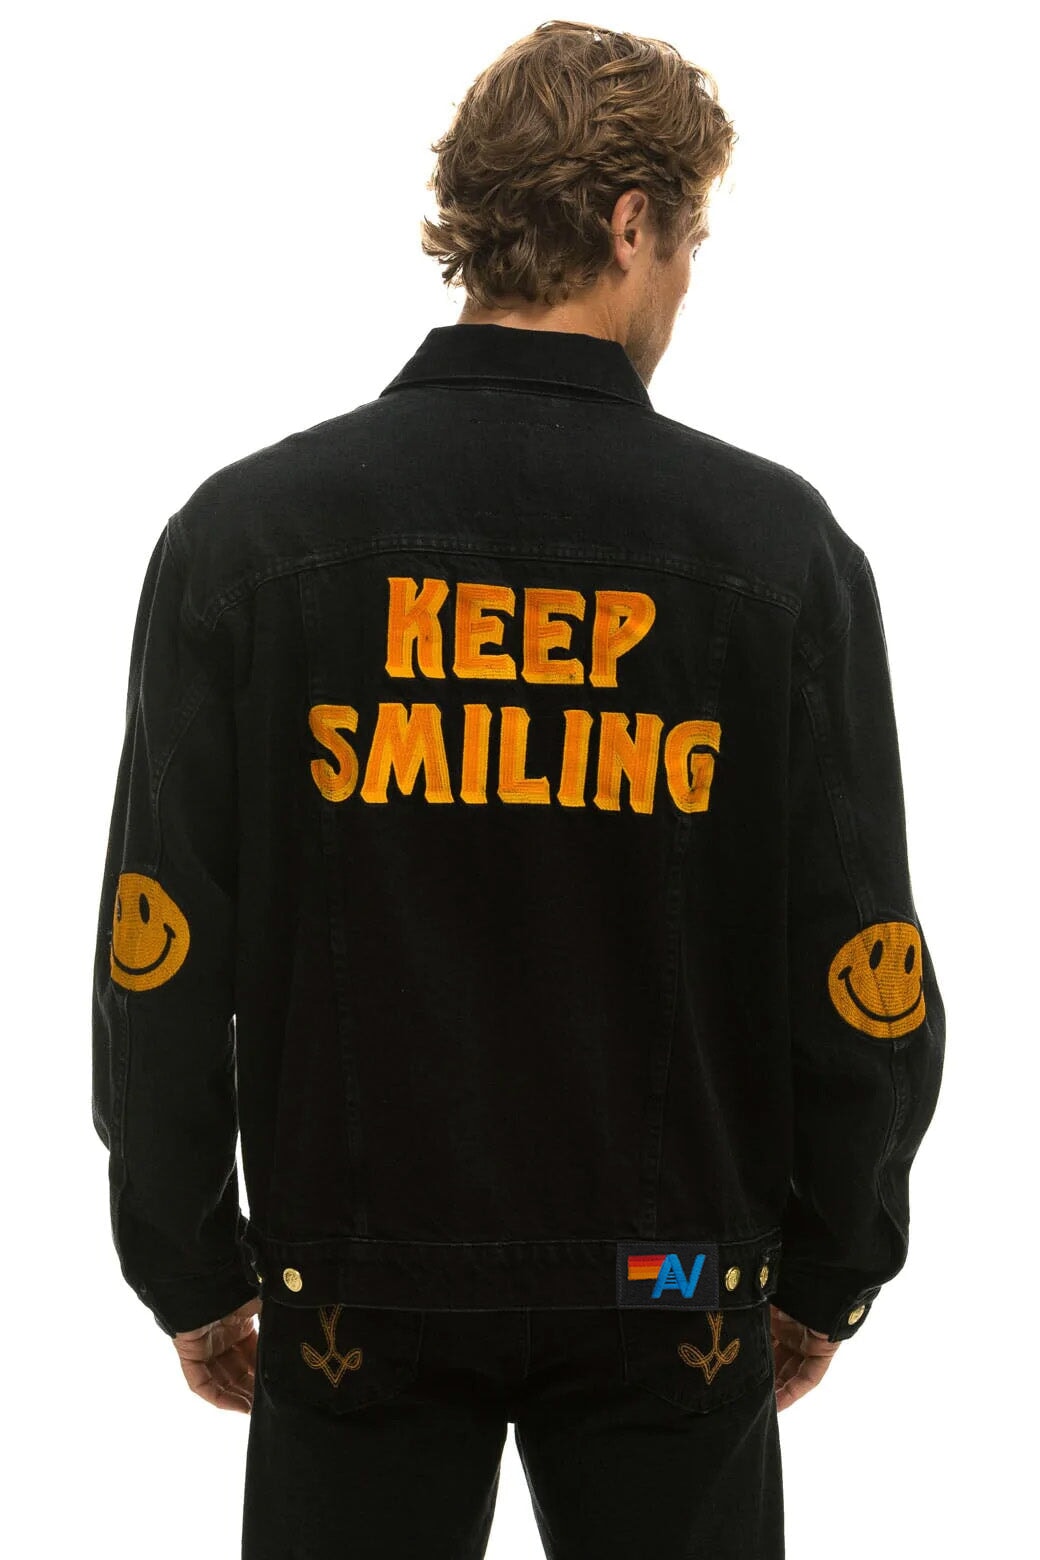 KEEP SMILING OVERSIZED CONCERT DENIM JACKET - VINTAGE BLACK Denim Jacket Aviator Nation 